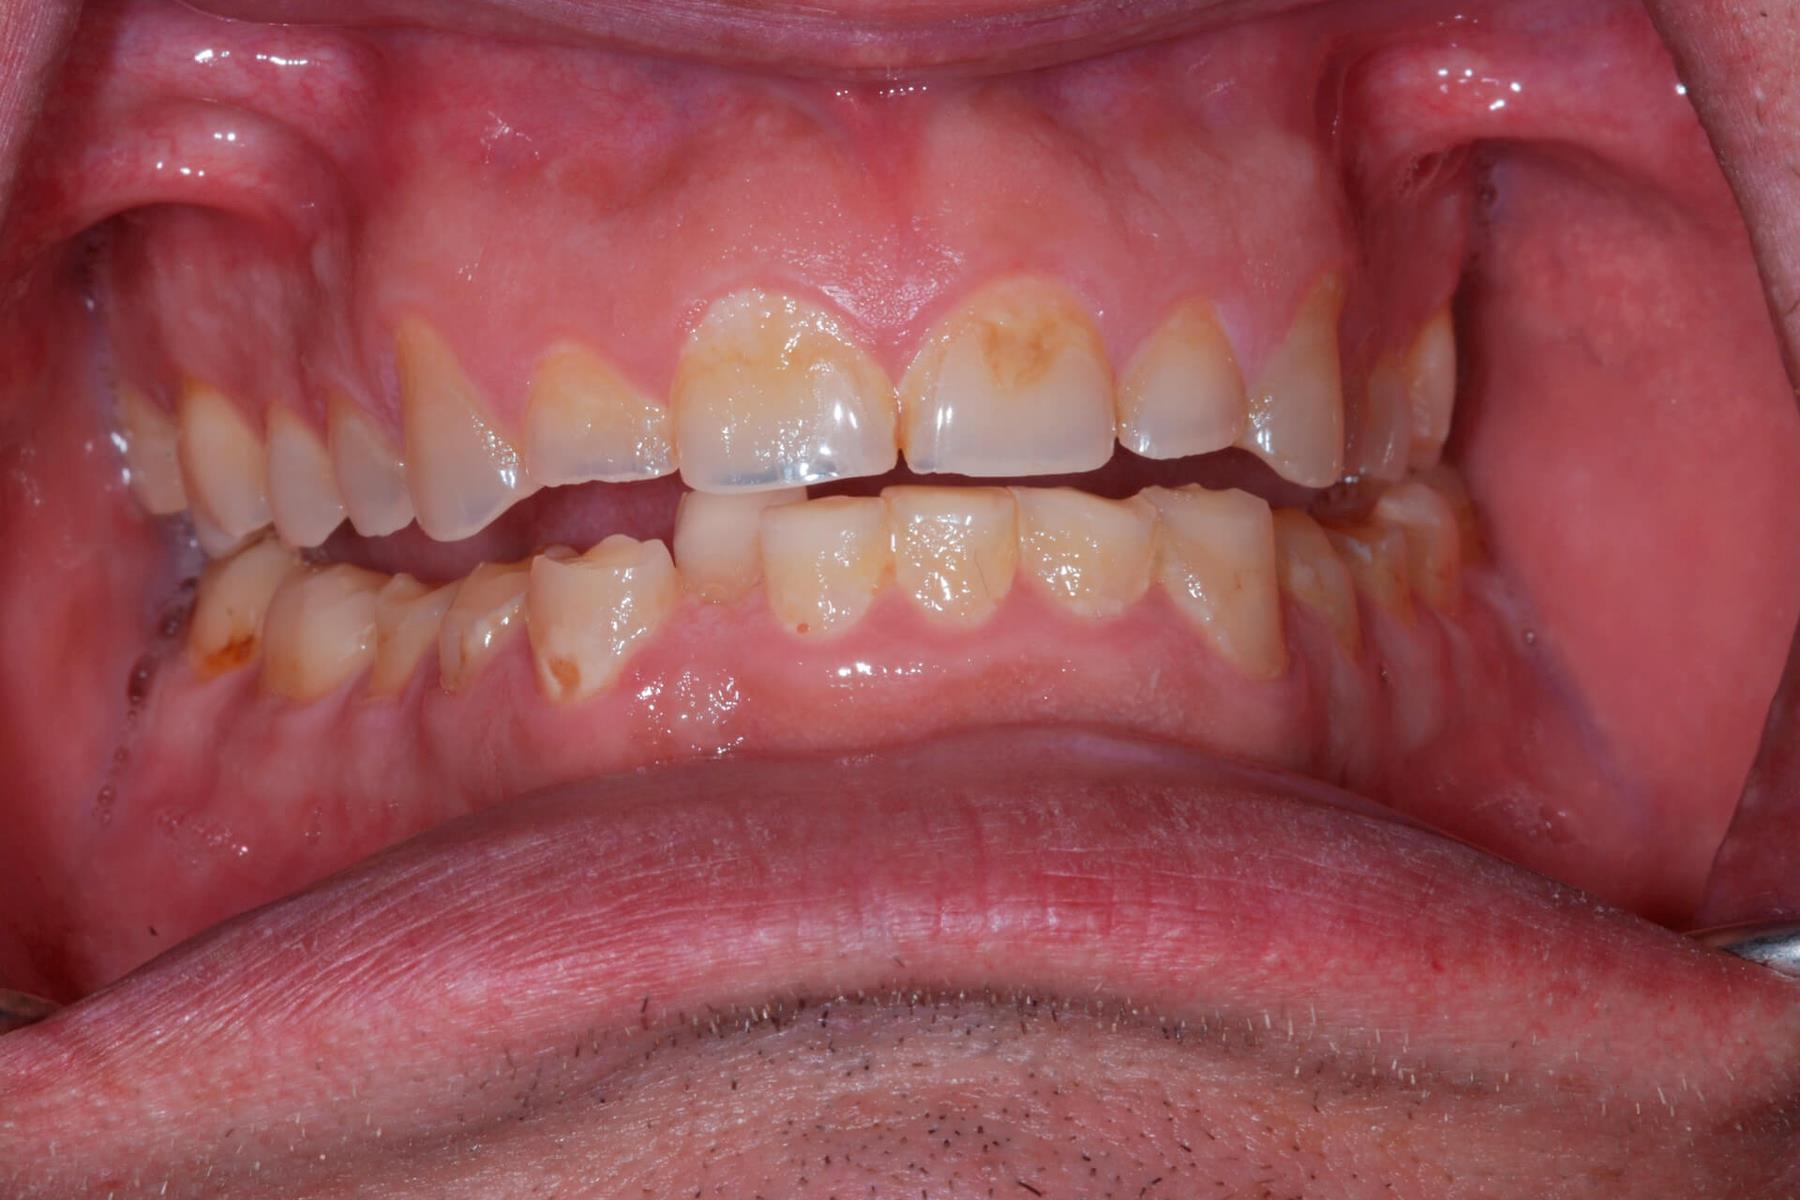 Tandlæge - Syreskadede tænder